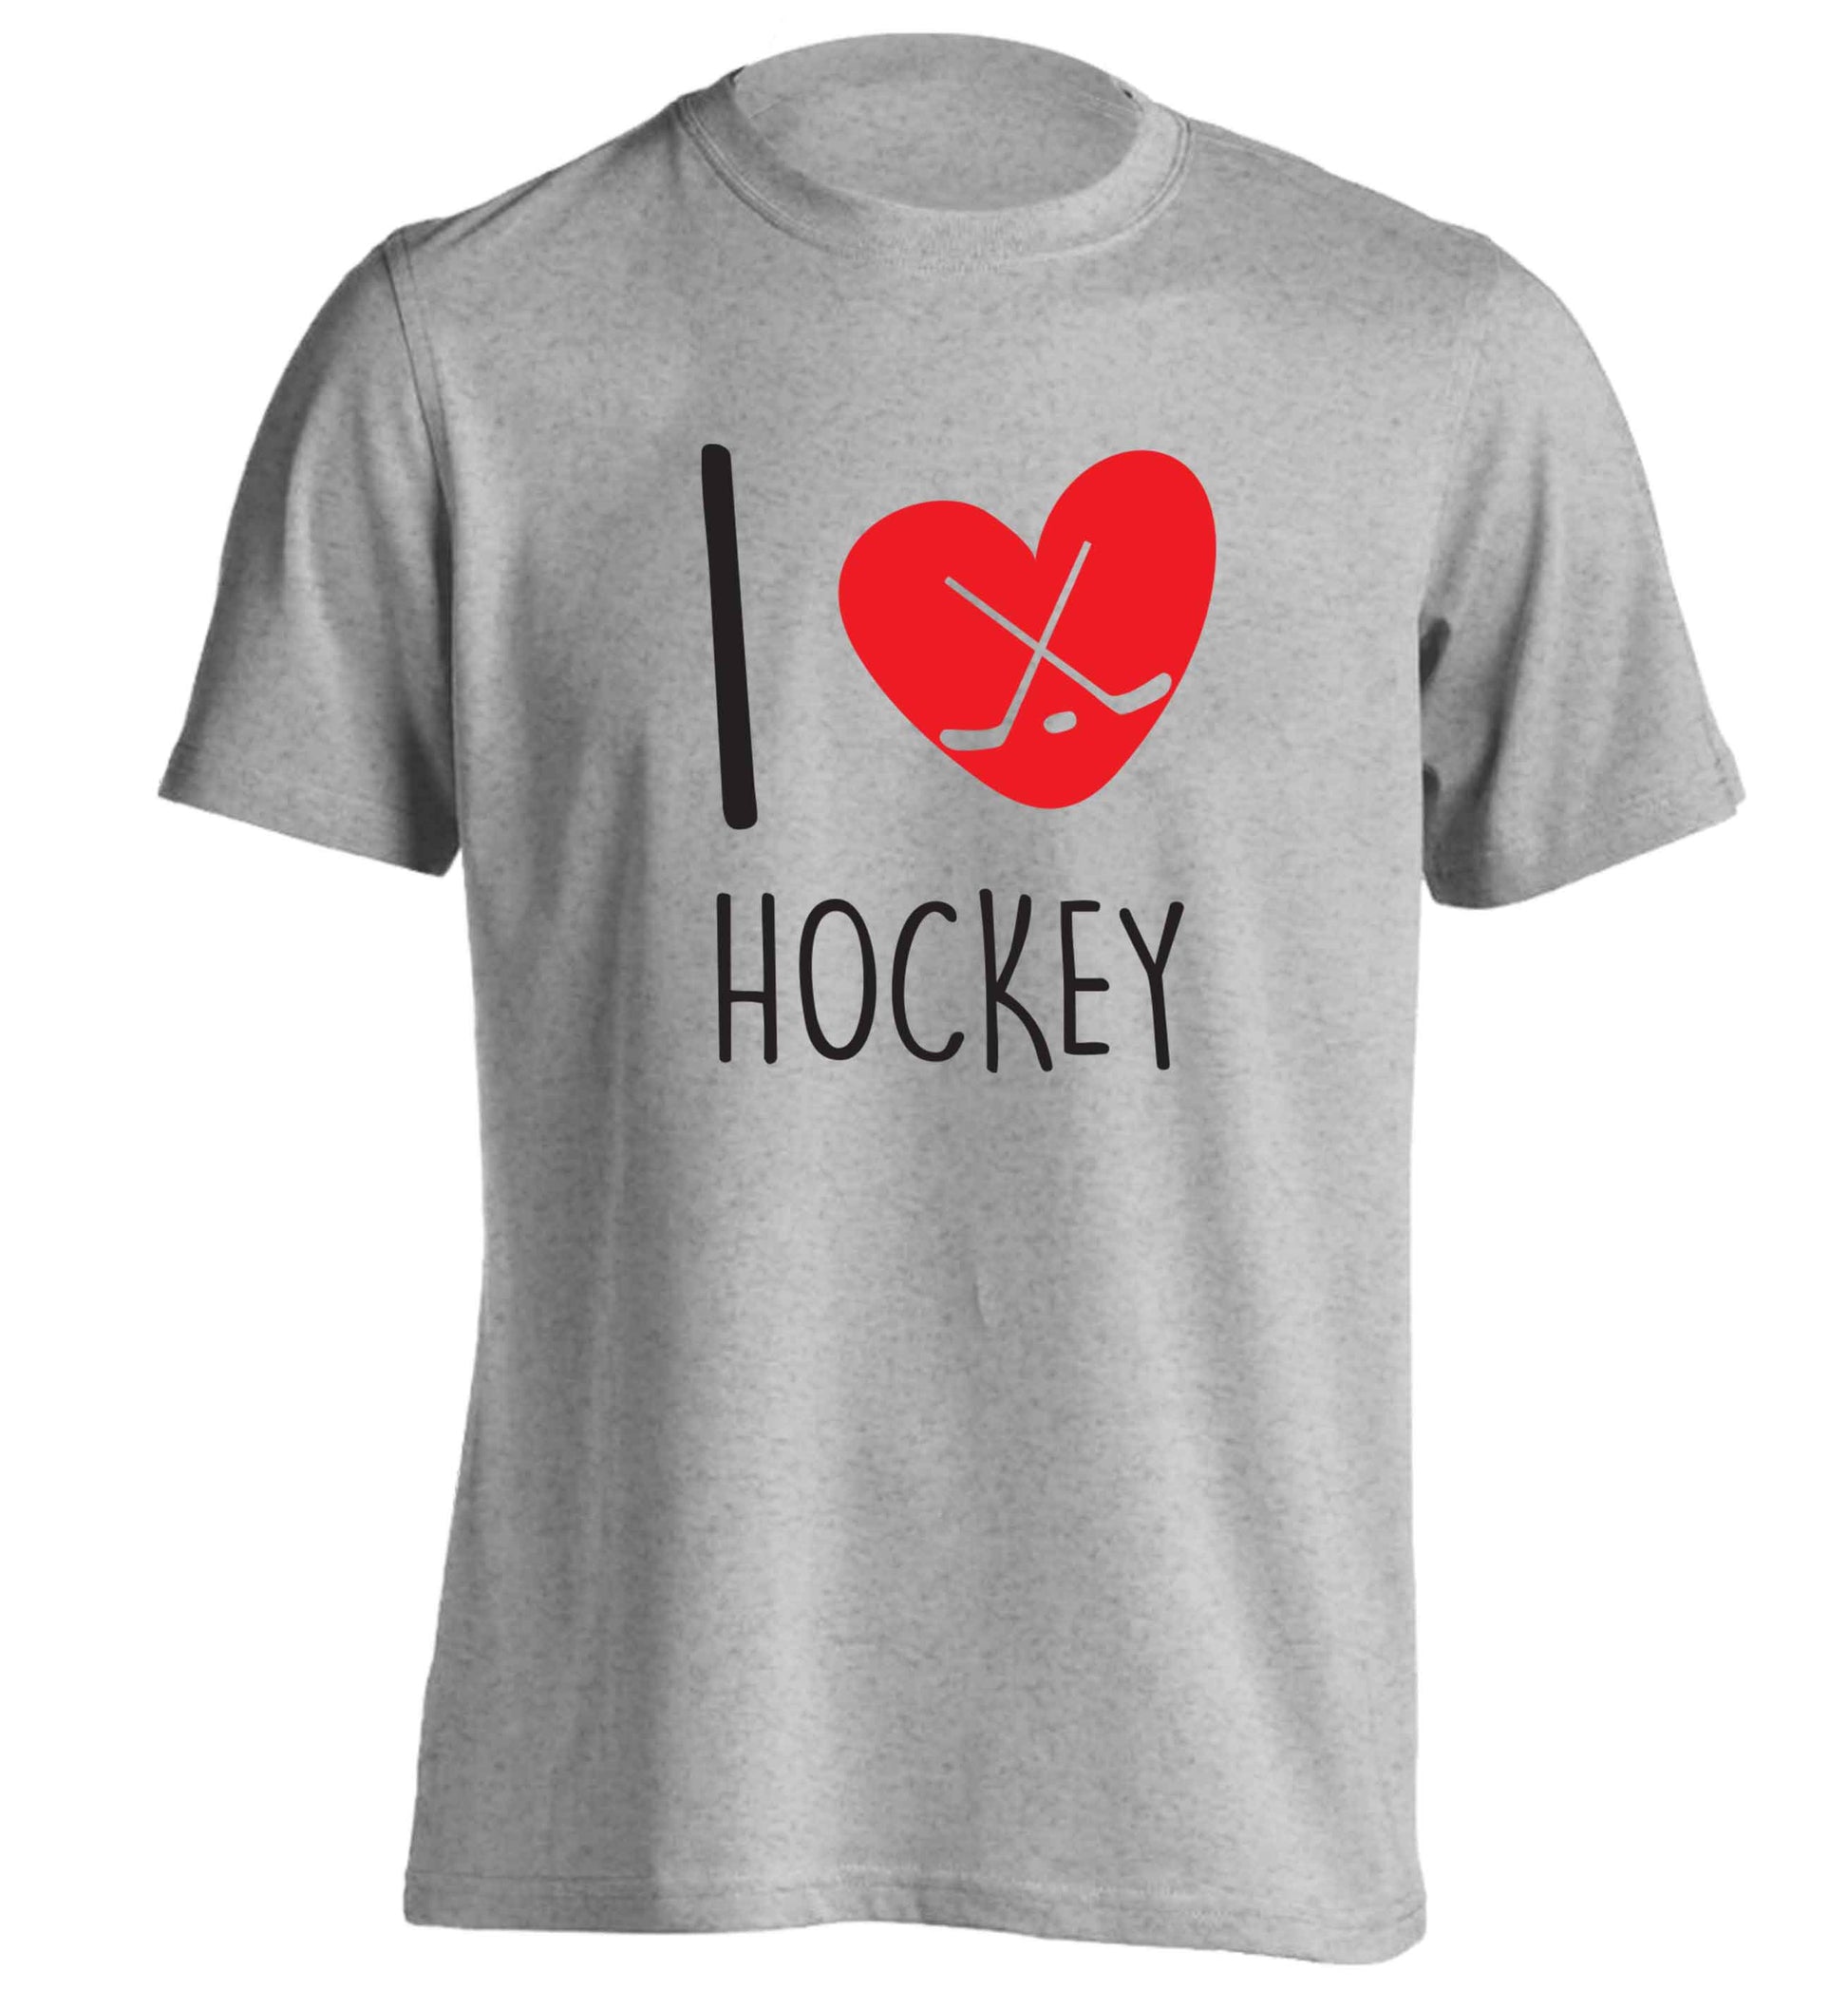 I love hockey adults unisex grey Tshirt 2XL